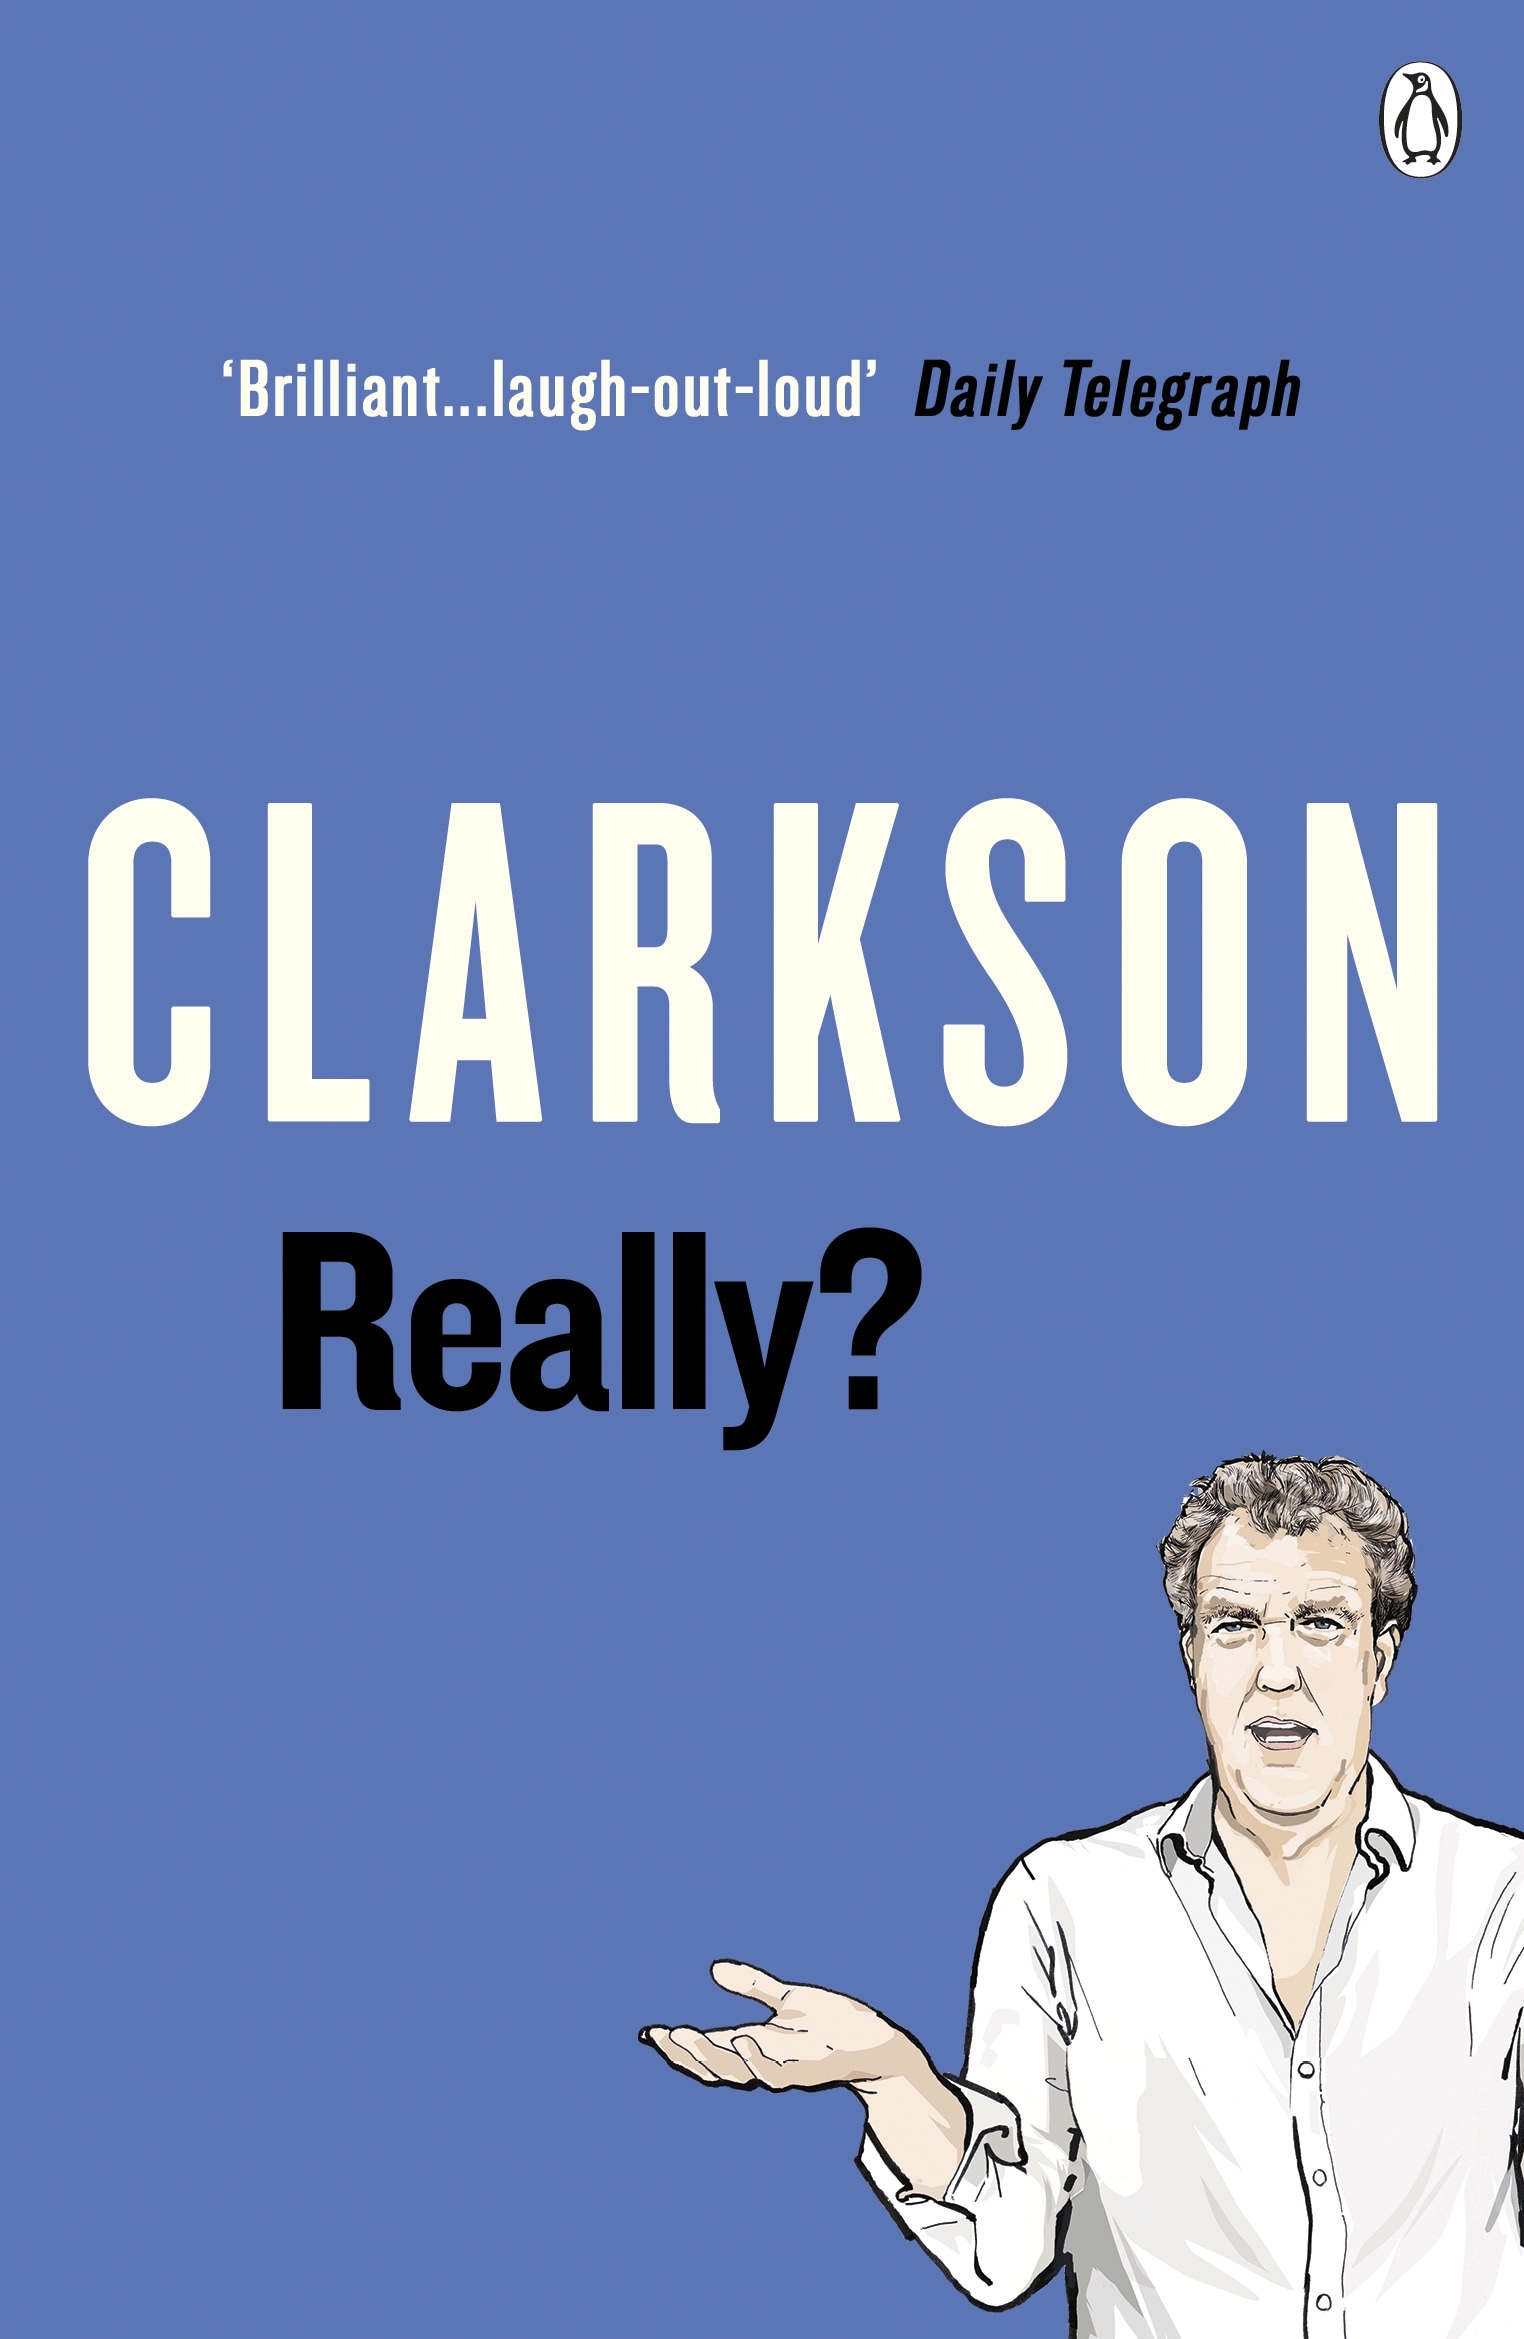 Book “Really?” by Jeremy Clarkson